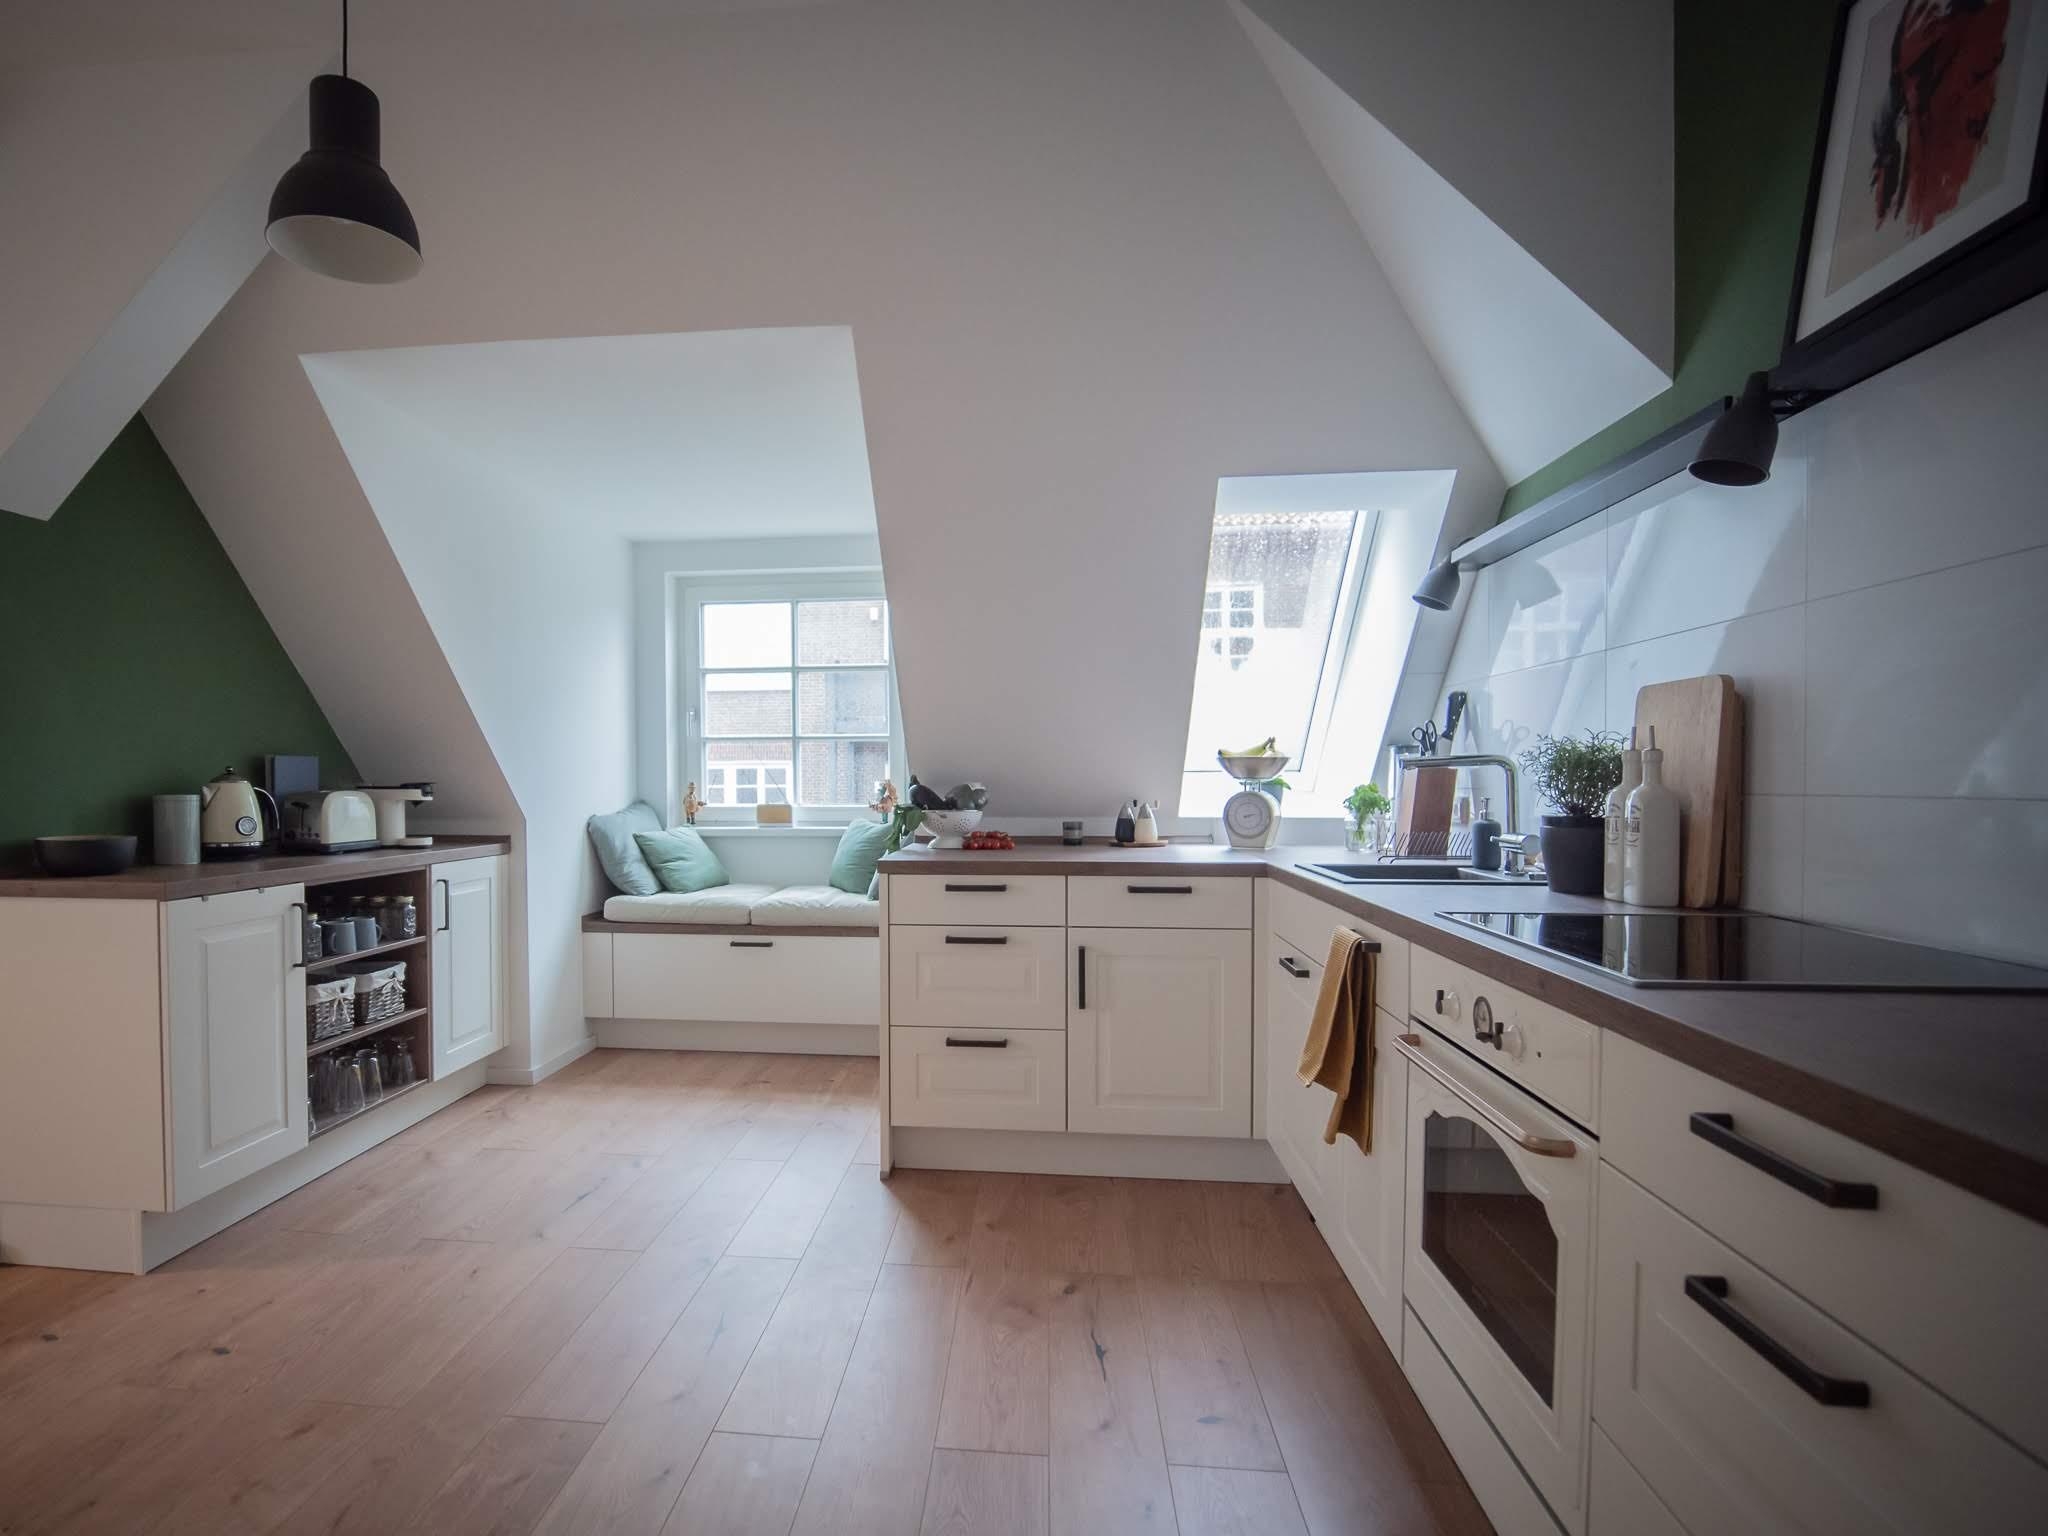 Mittel- und Treffpunkt unserer Wohnung. #kitchenlove #sitzecke #couchstyle